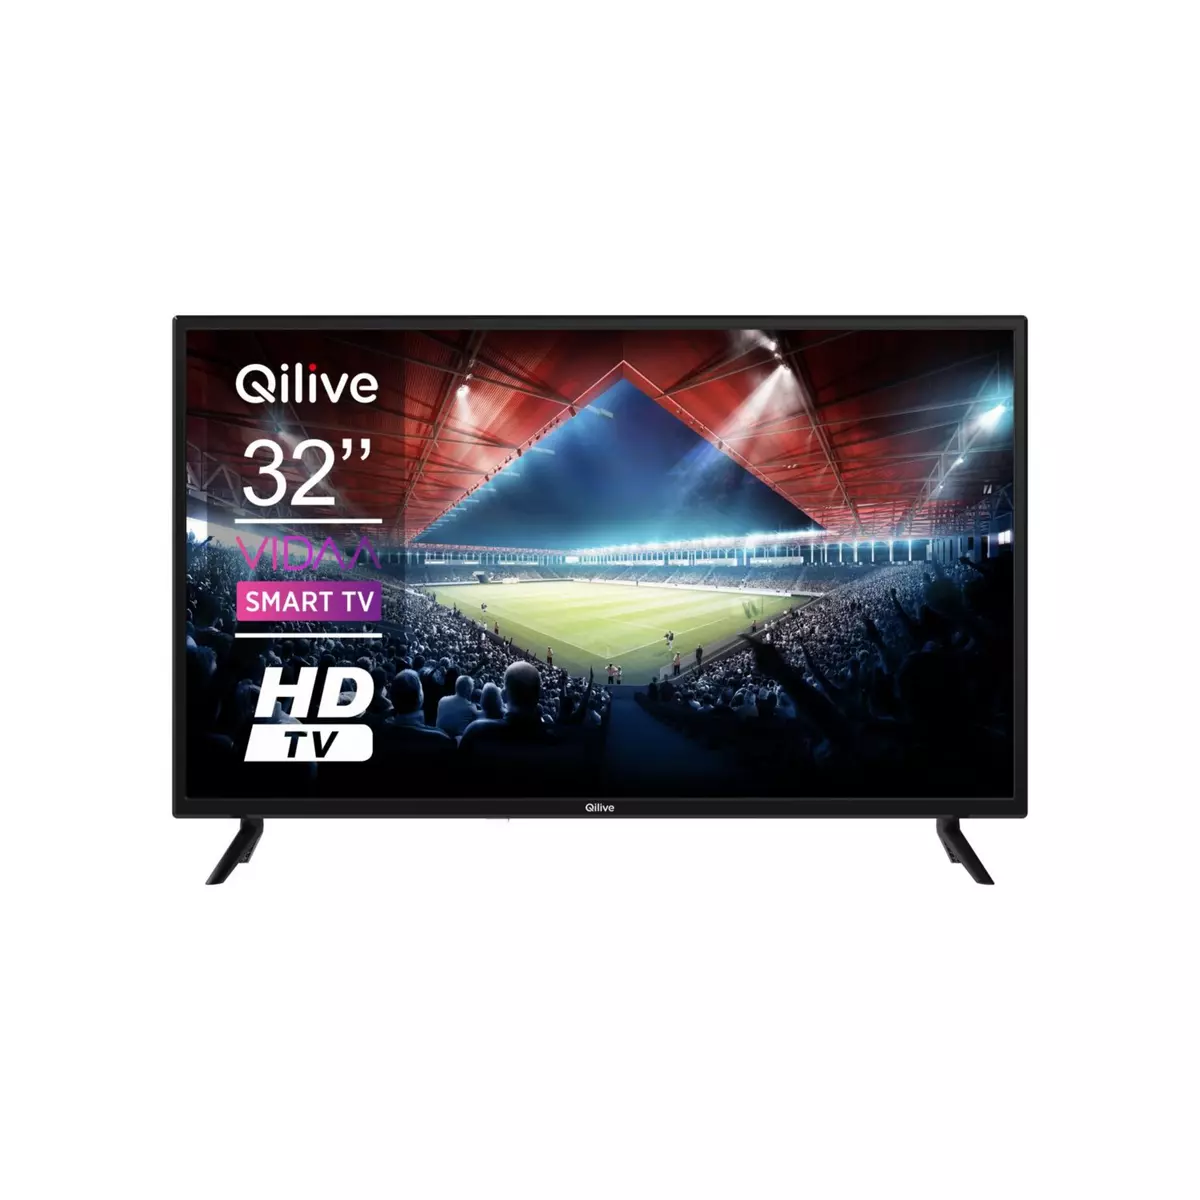 QILIVE Q32H231B TV D-LED HD 81 cm pas cher 